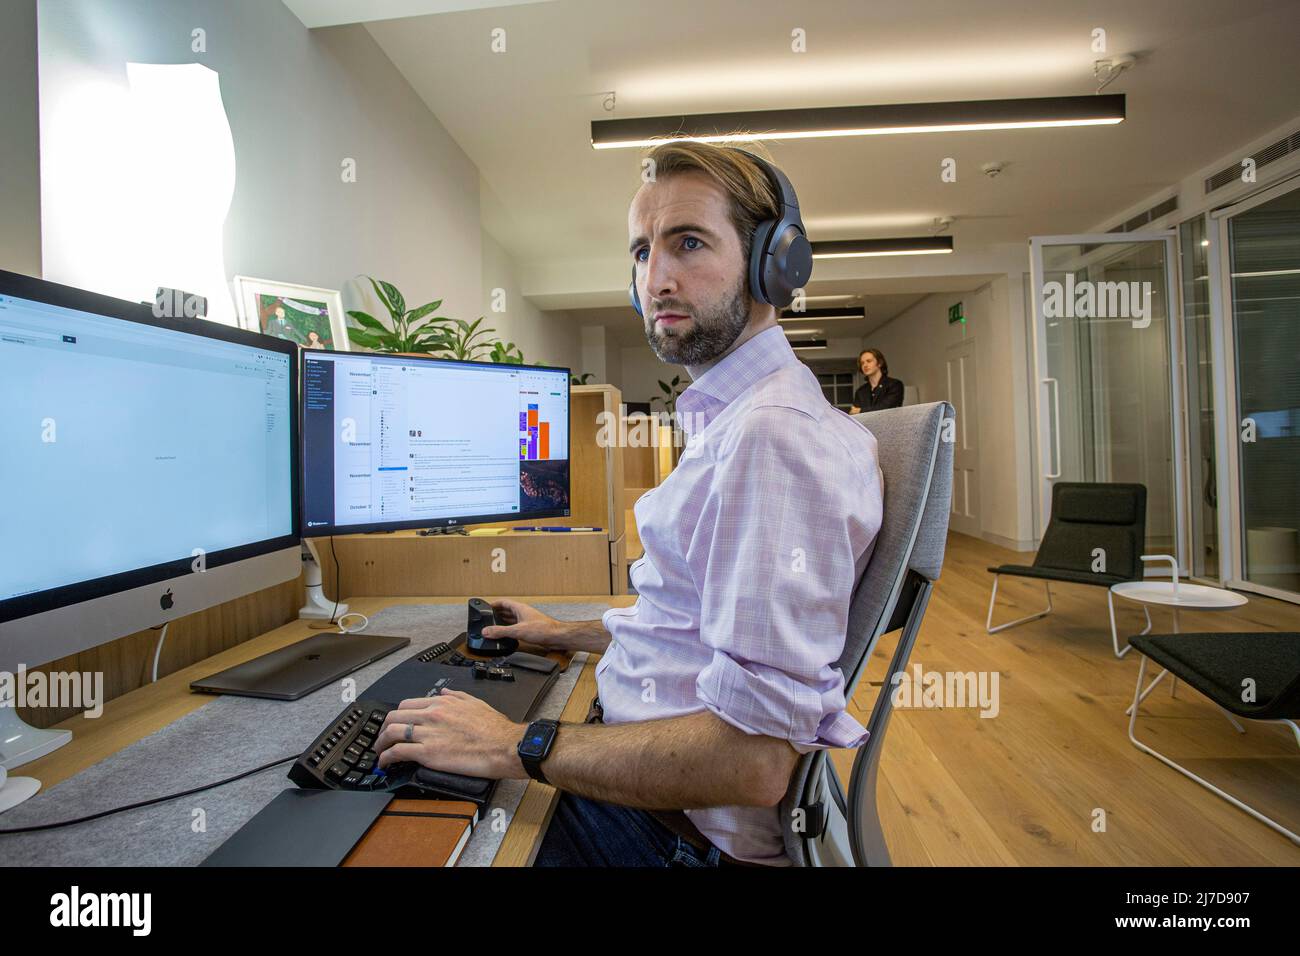 jeune homme décontracté avec micro-casque utilisant un ordinateur dans un bureau Banque D'Images